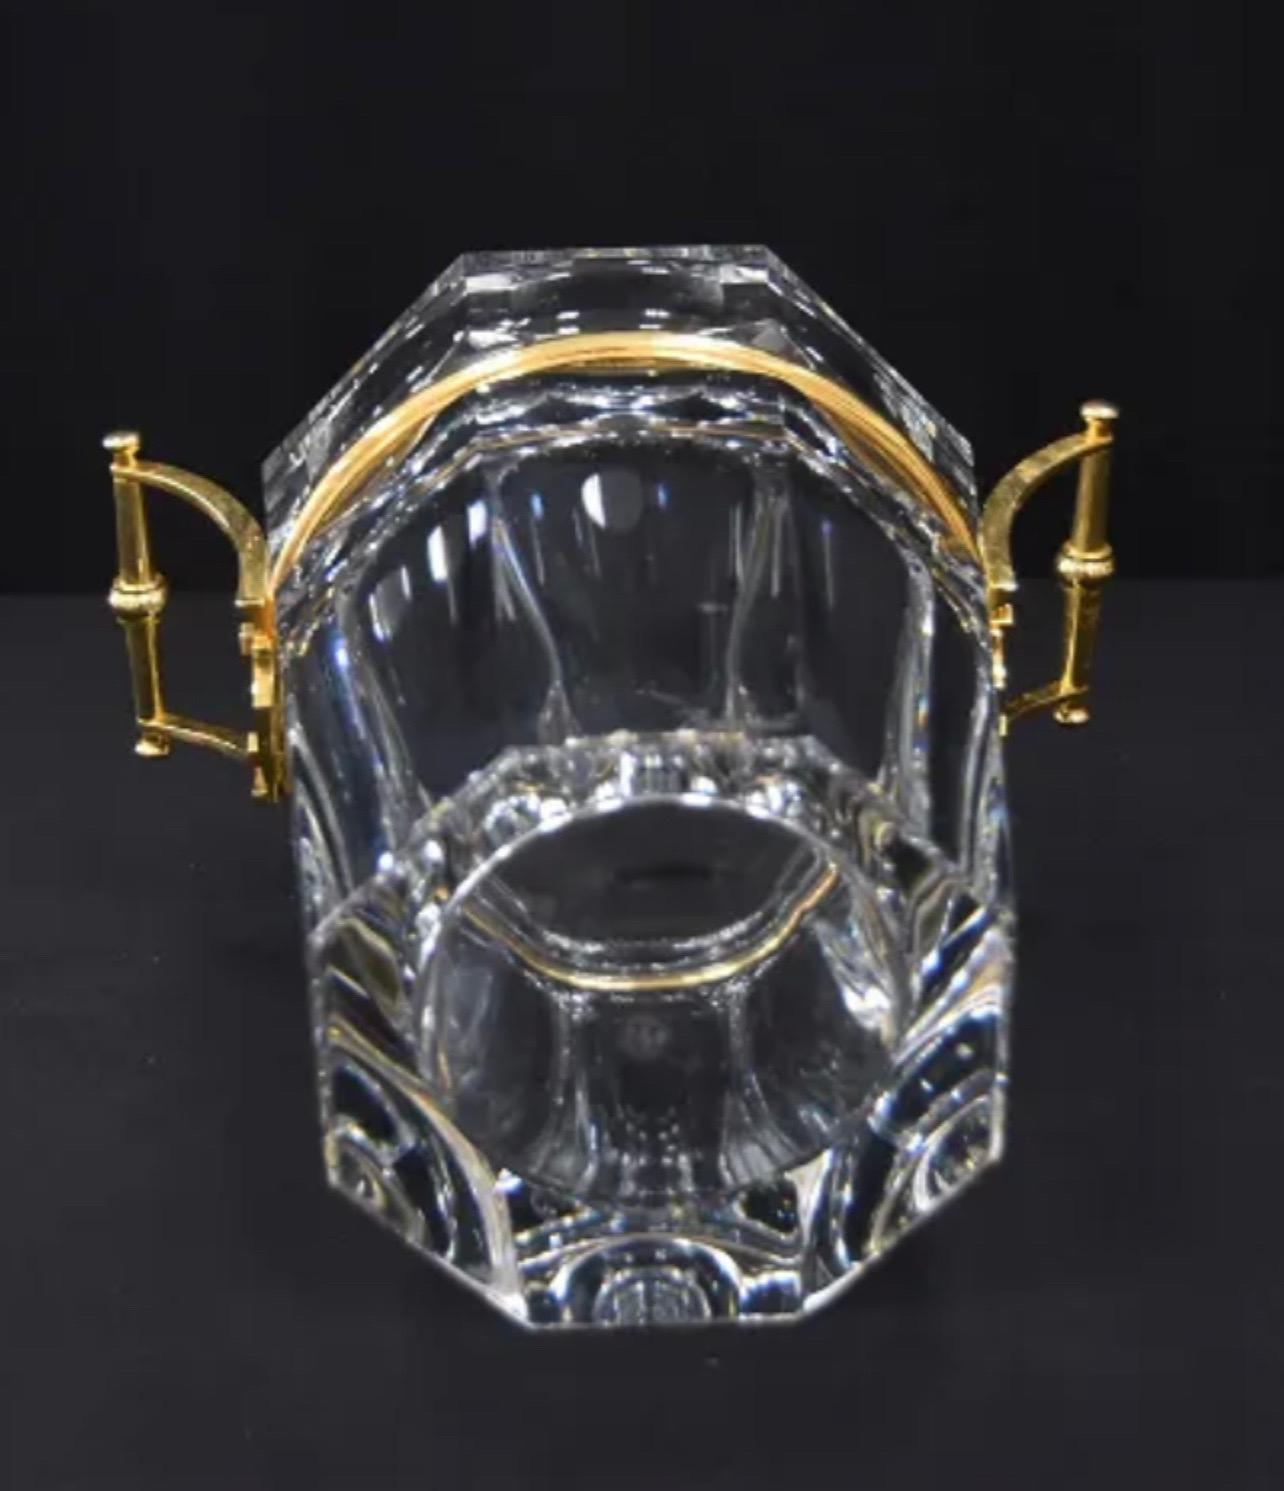 Polished Modern Baccarat Moulin Rouge Harcourt Crystal Champagne Cooler Ice Bucket Vase For Sale